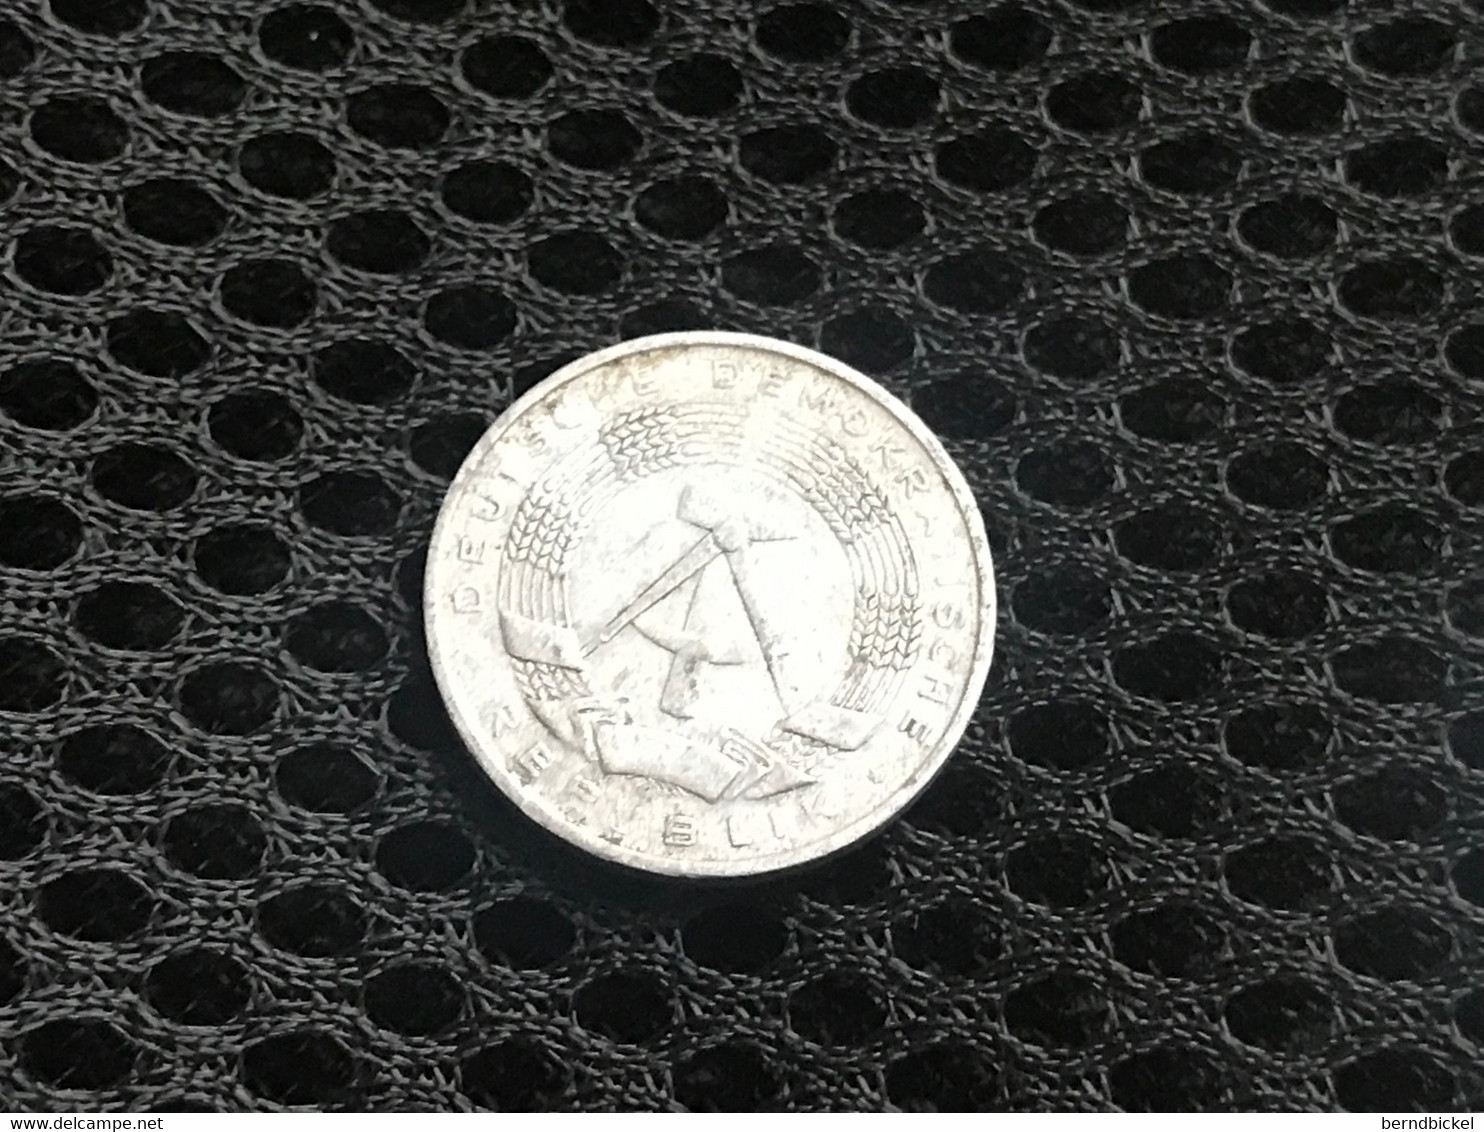 Münze Münzen Umlaufmünze Deutschland DDR 1 Pfennig 1963 - 1 Pfennig